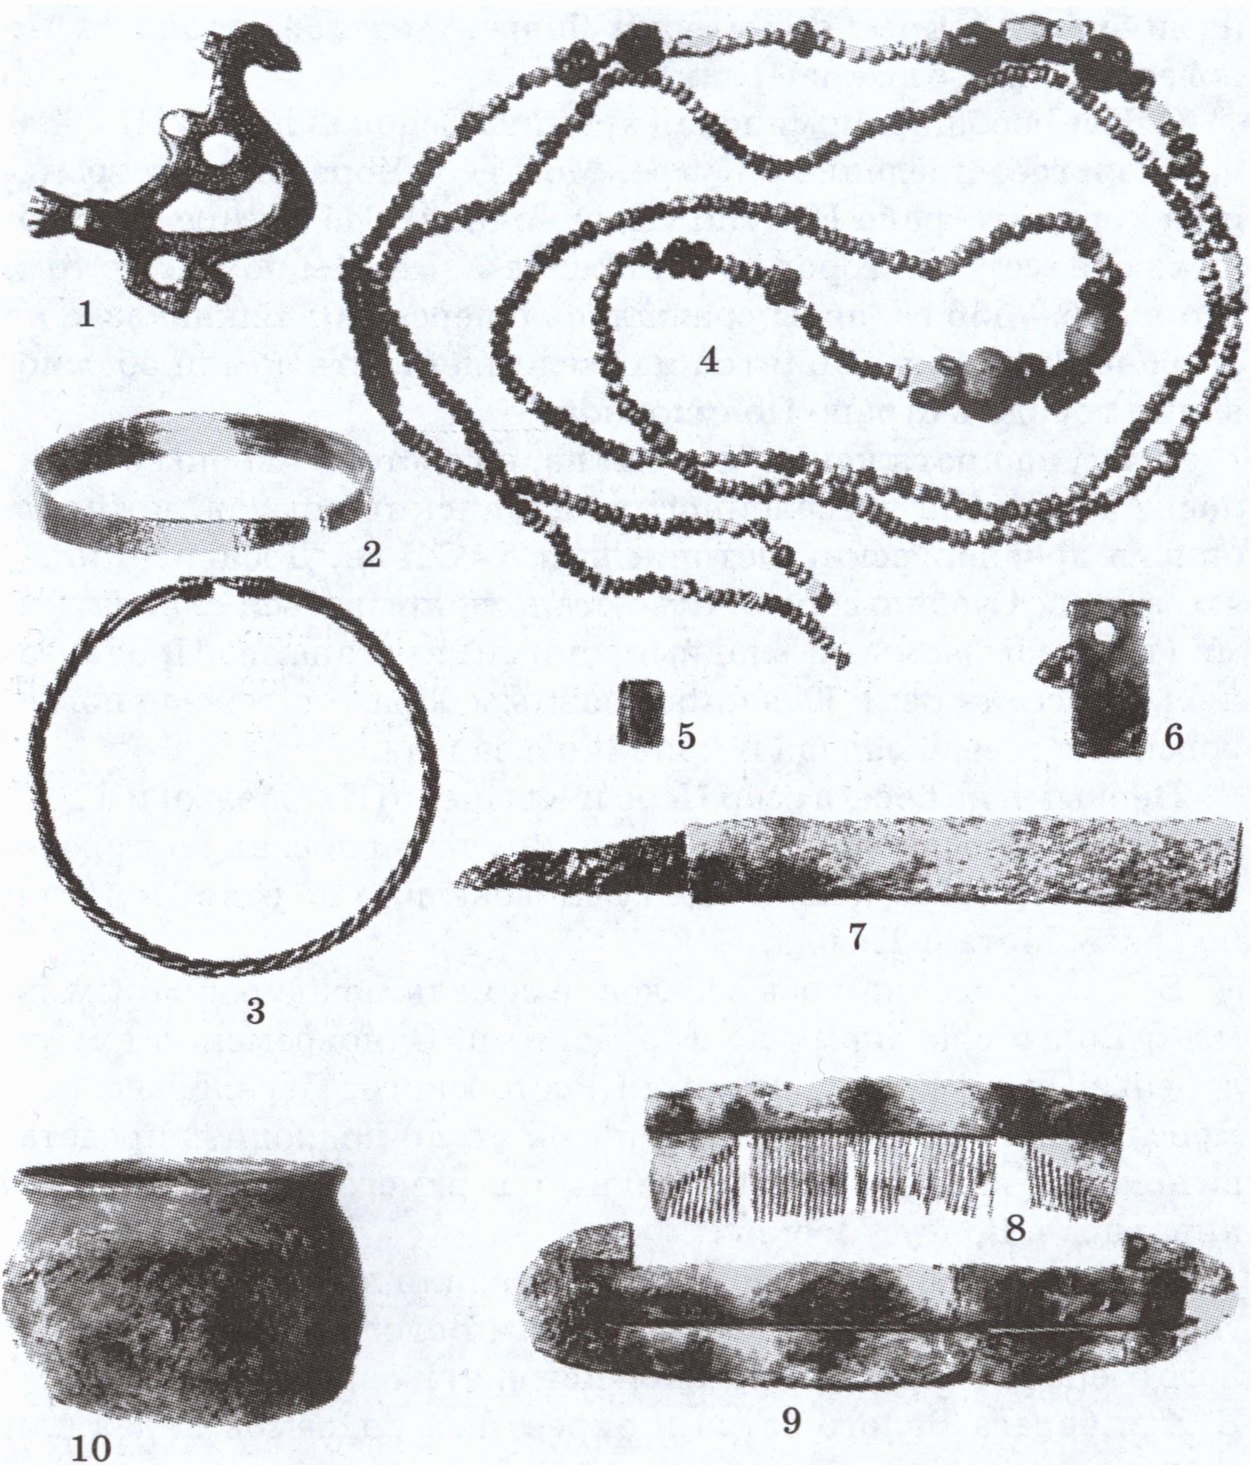 Могильник Нефедьево. Находки из погребения 31. 1—3, 5, 6 — цветной металл; 4 — стекло; 7 — железо; 8—9 — кость; 10 — керамика